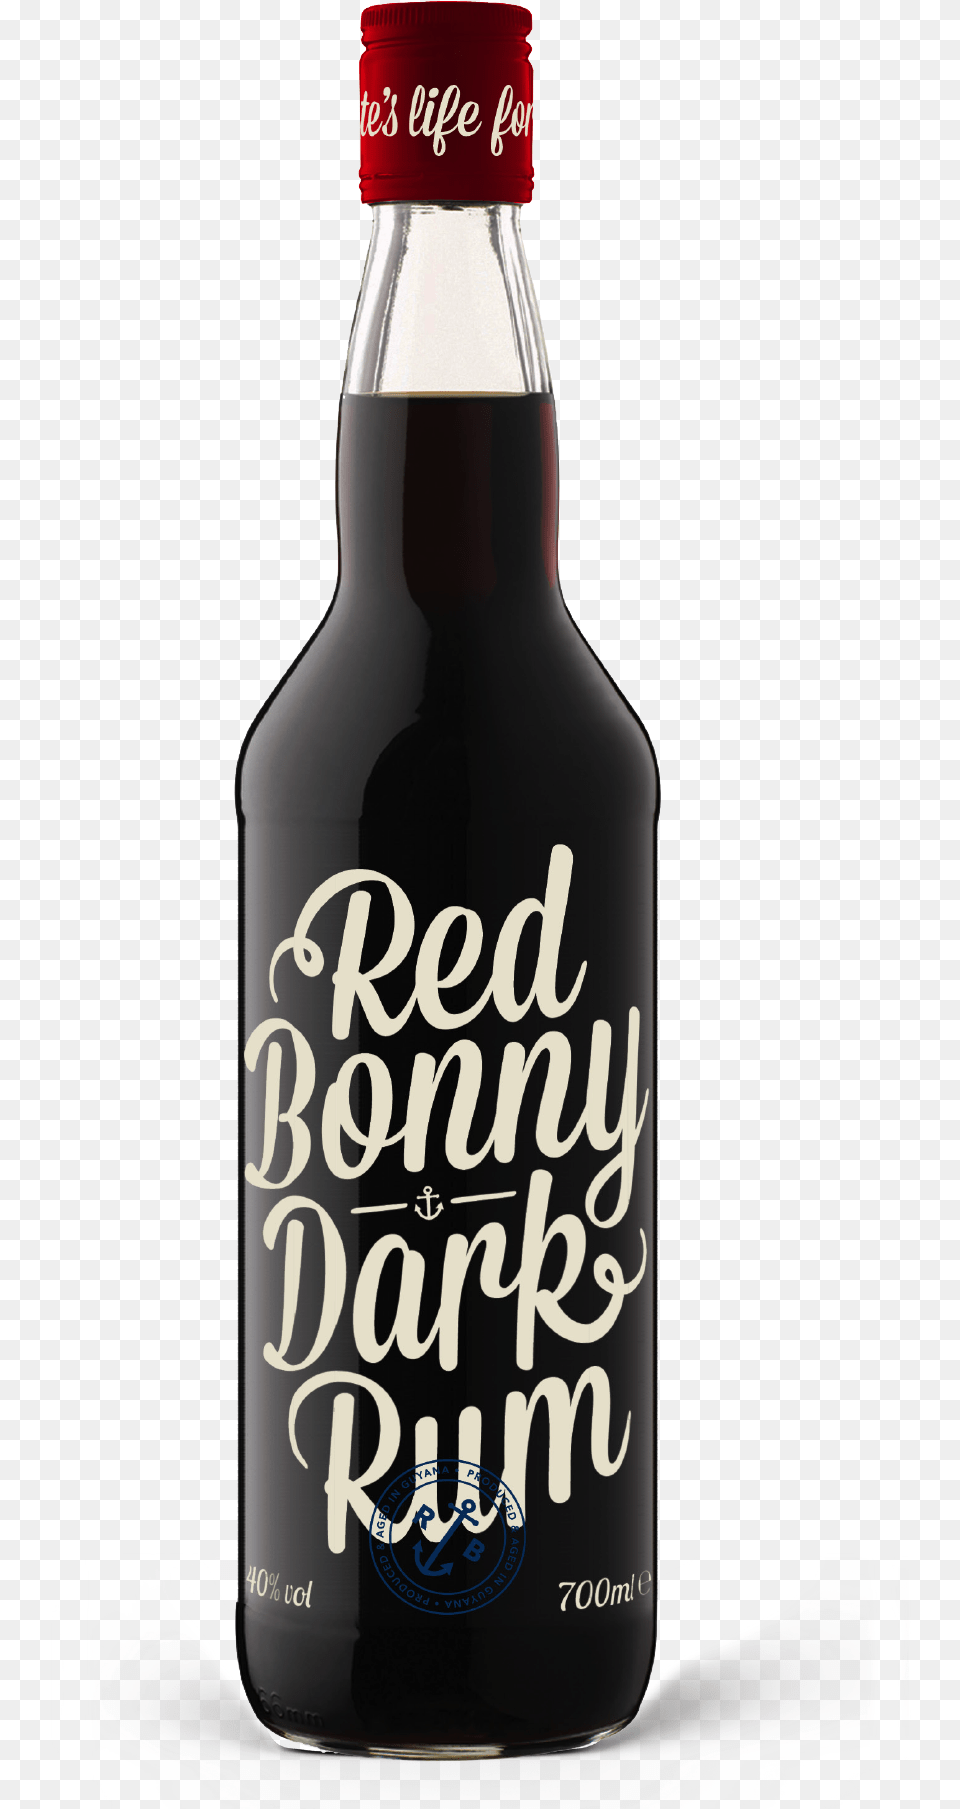 Red Bonny Dark Rum Bottle Glass Bottle, Alcohol, Beer, Beverage, Liquor Png Image